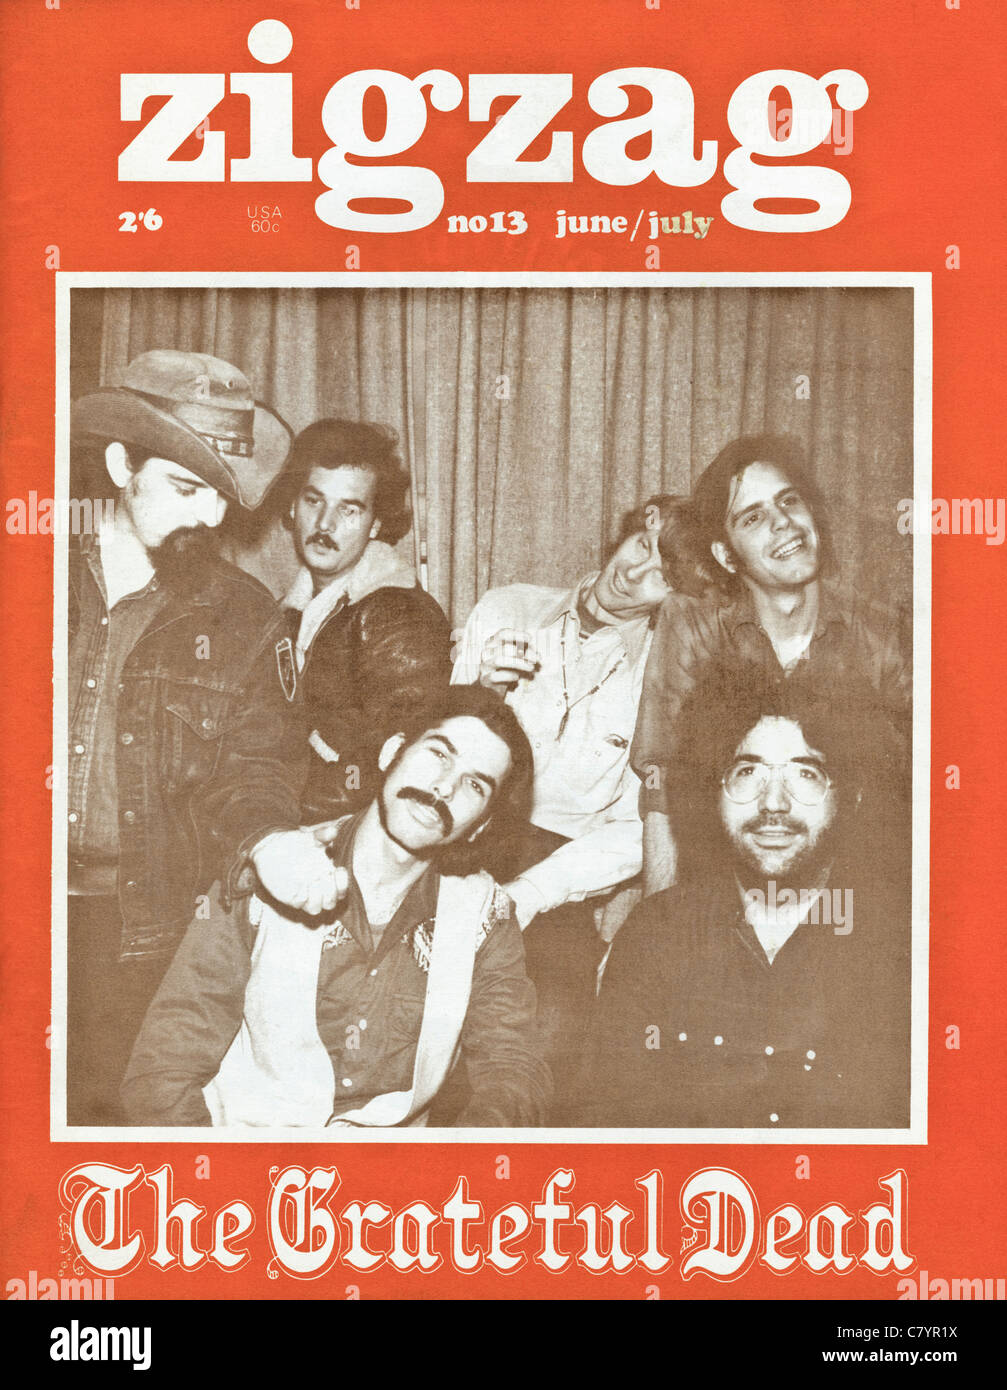 Couverture de magazine de musique rock anglais en zigzag au prix de 2 shillings et 6 pence daté de juin - juillet 1970 avec le Grateful Dead Banque D'Images